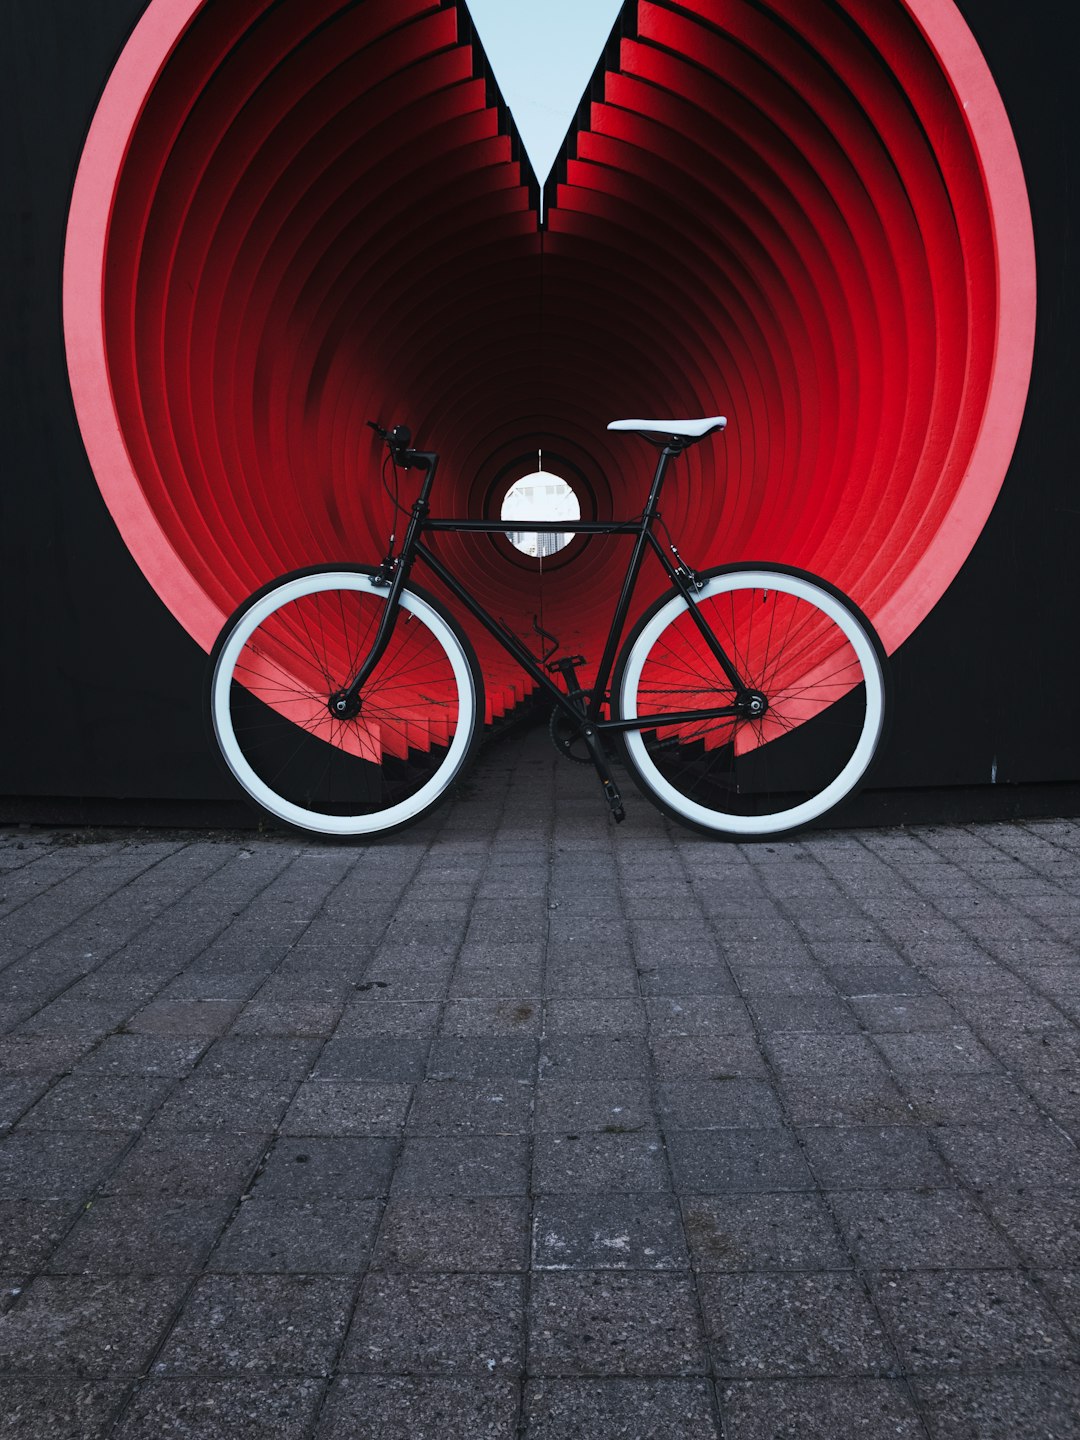 Vintage and minimal bicycle by @beekay on Unsplash